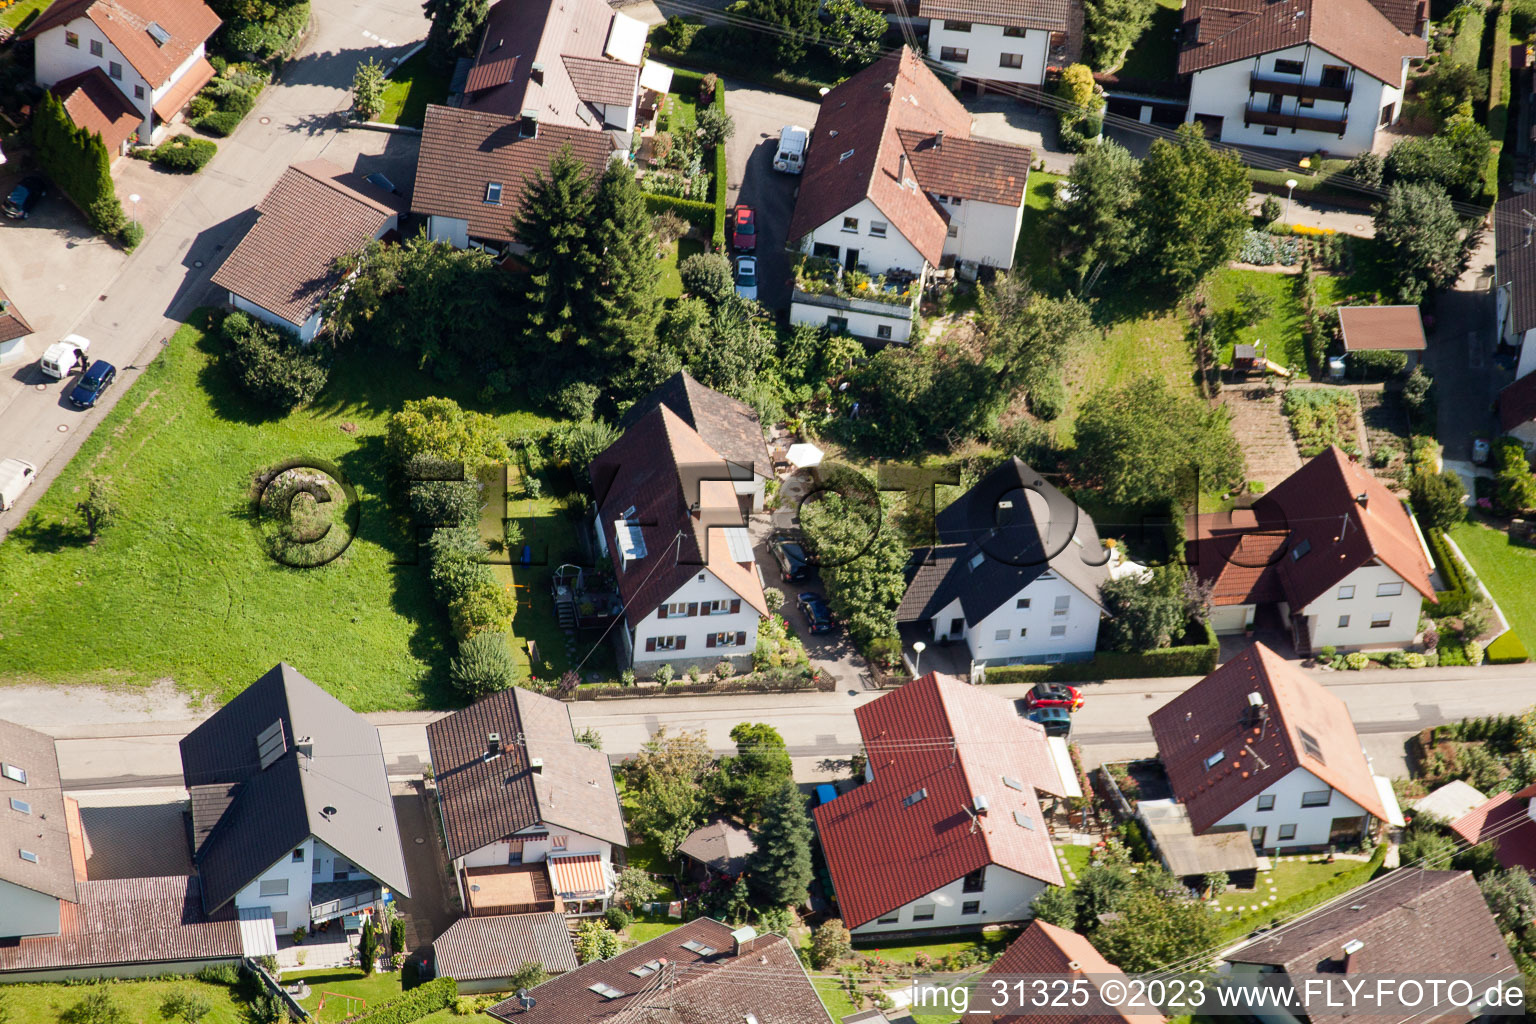 Varnhalt, Gartenstr im Ortsteil Gallenbach in Baden-Baden im Bundesland Baden-Württemberg, Deutschland von der Drohne aus gesehen